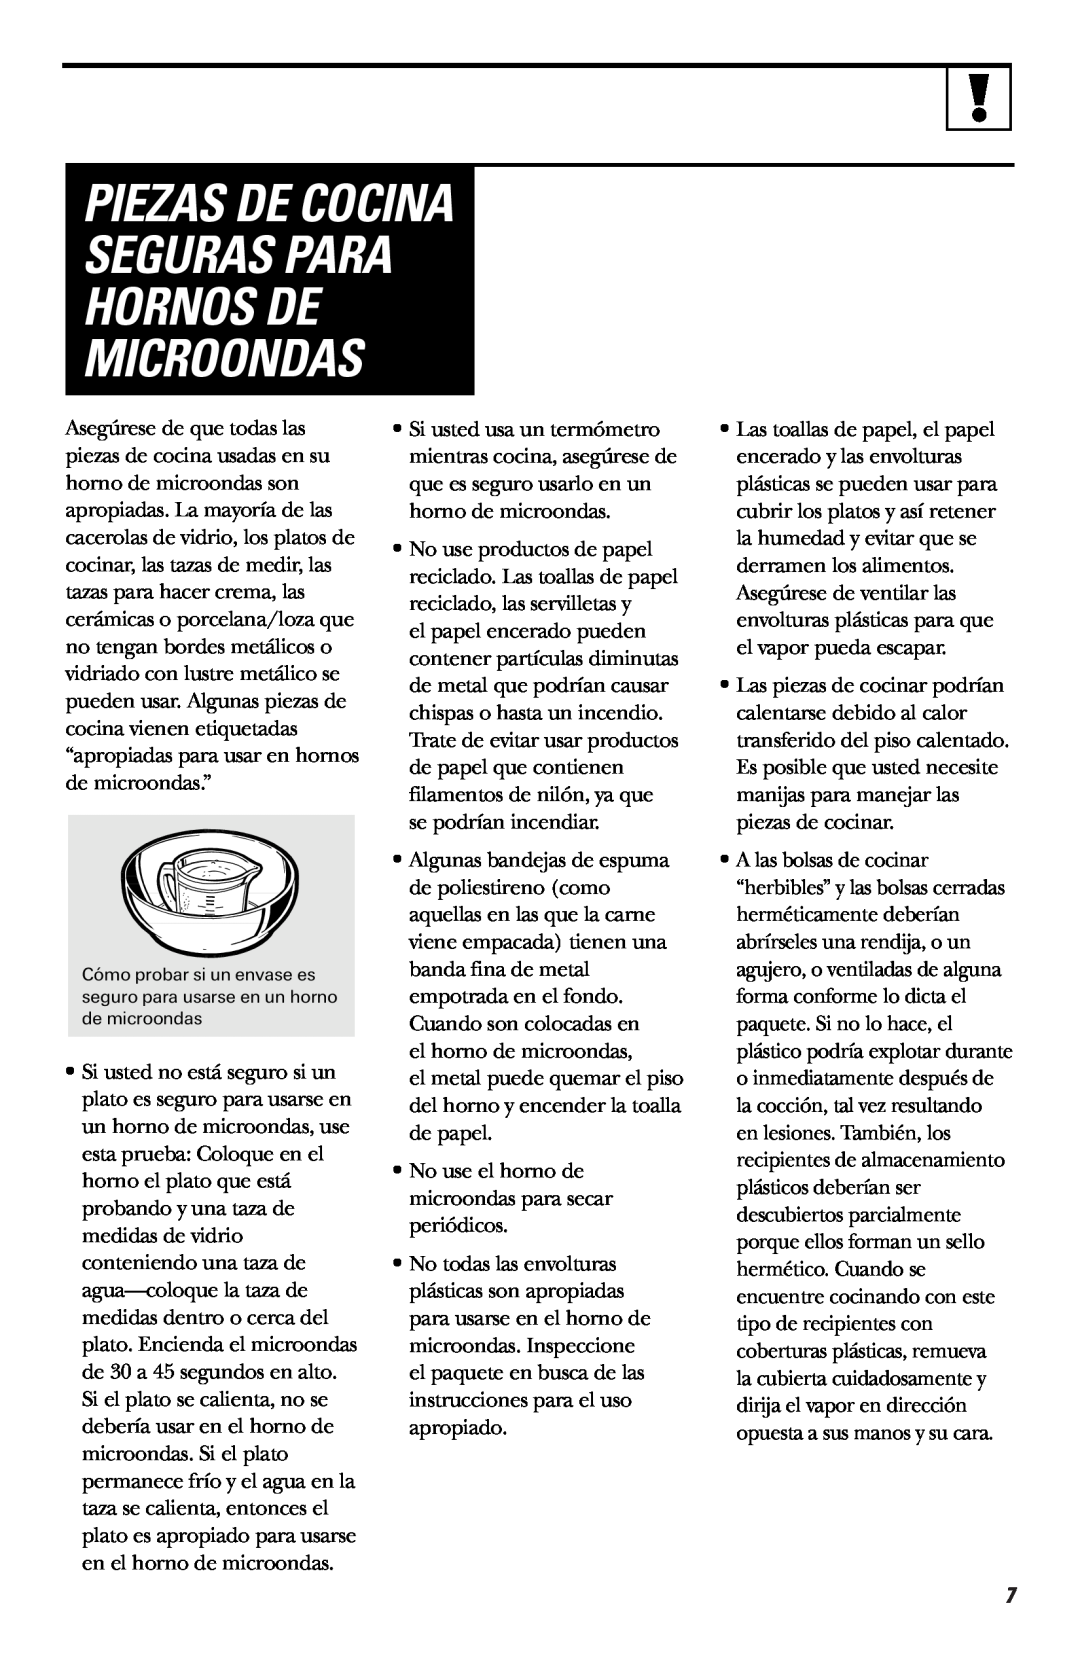 Hotpoint RVM1635 owner manual Piezas De Cocina Seguras Para Hornos De Microondas 